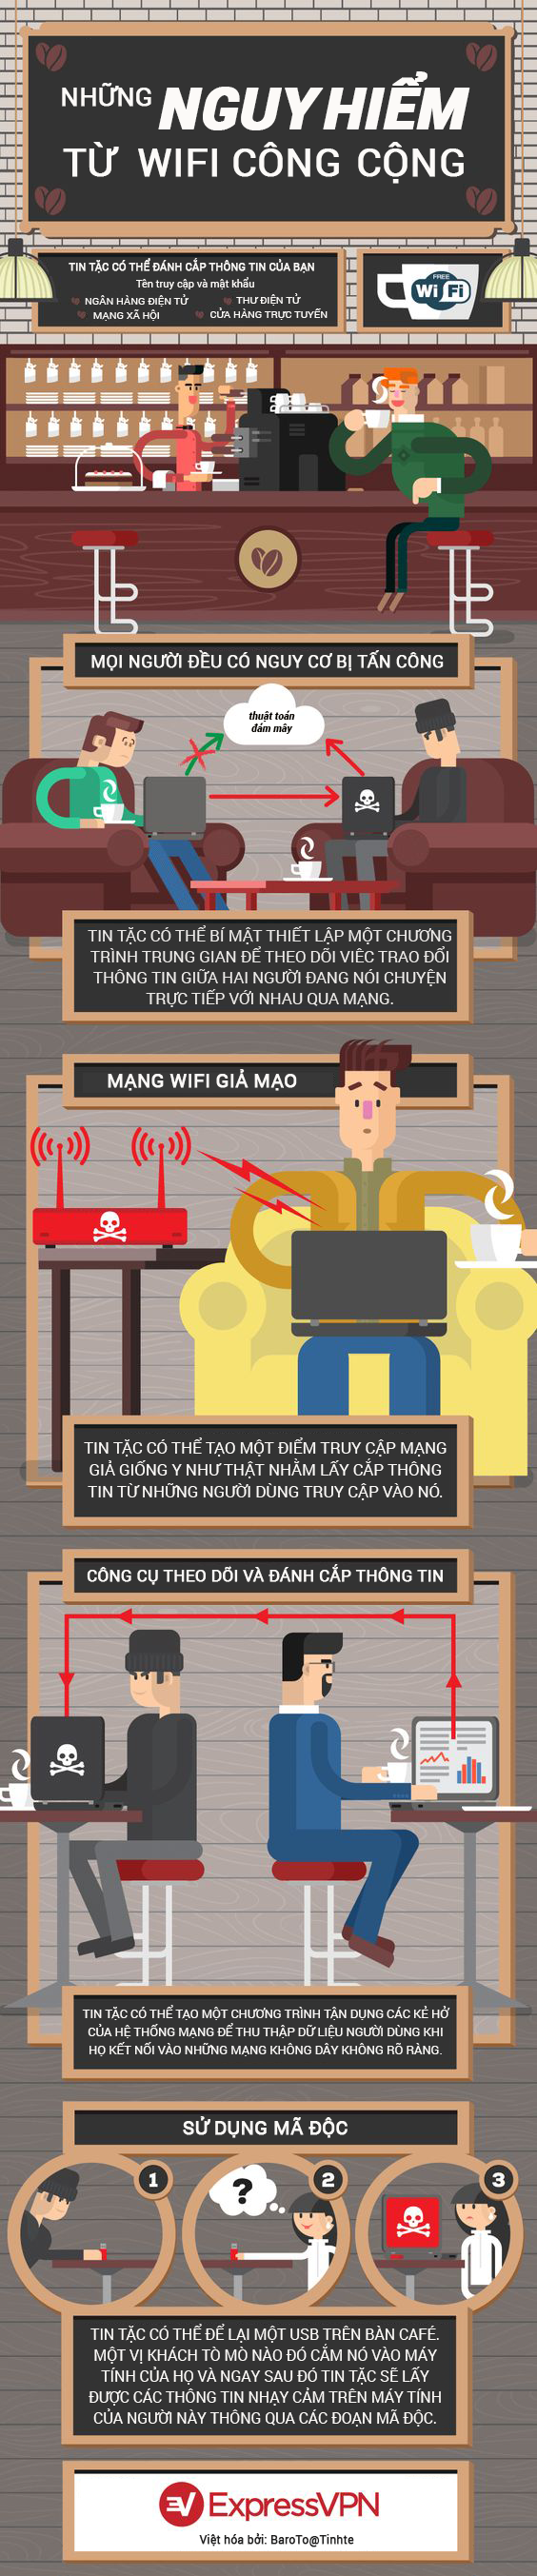 Nguy hiểm đe dọa từ Wifi Công Cộng và các mạng Wifi miễn phí - Ảnh 1.